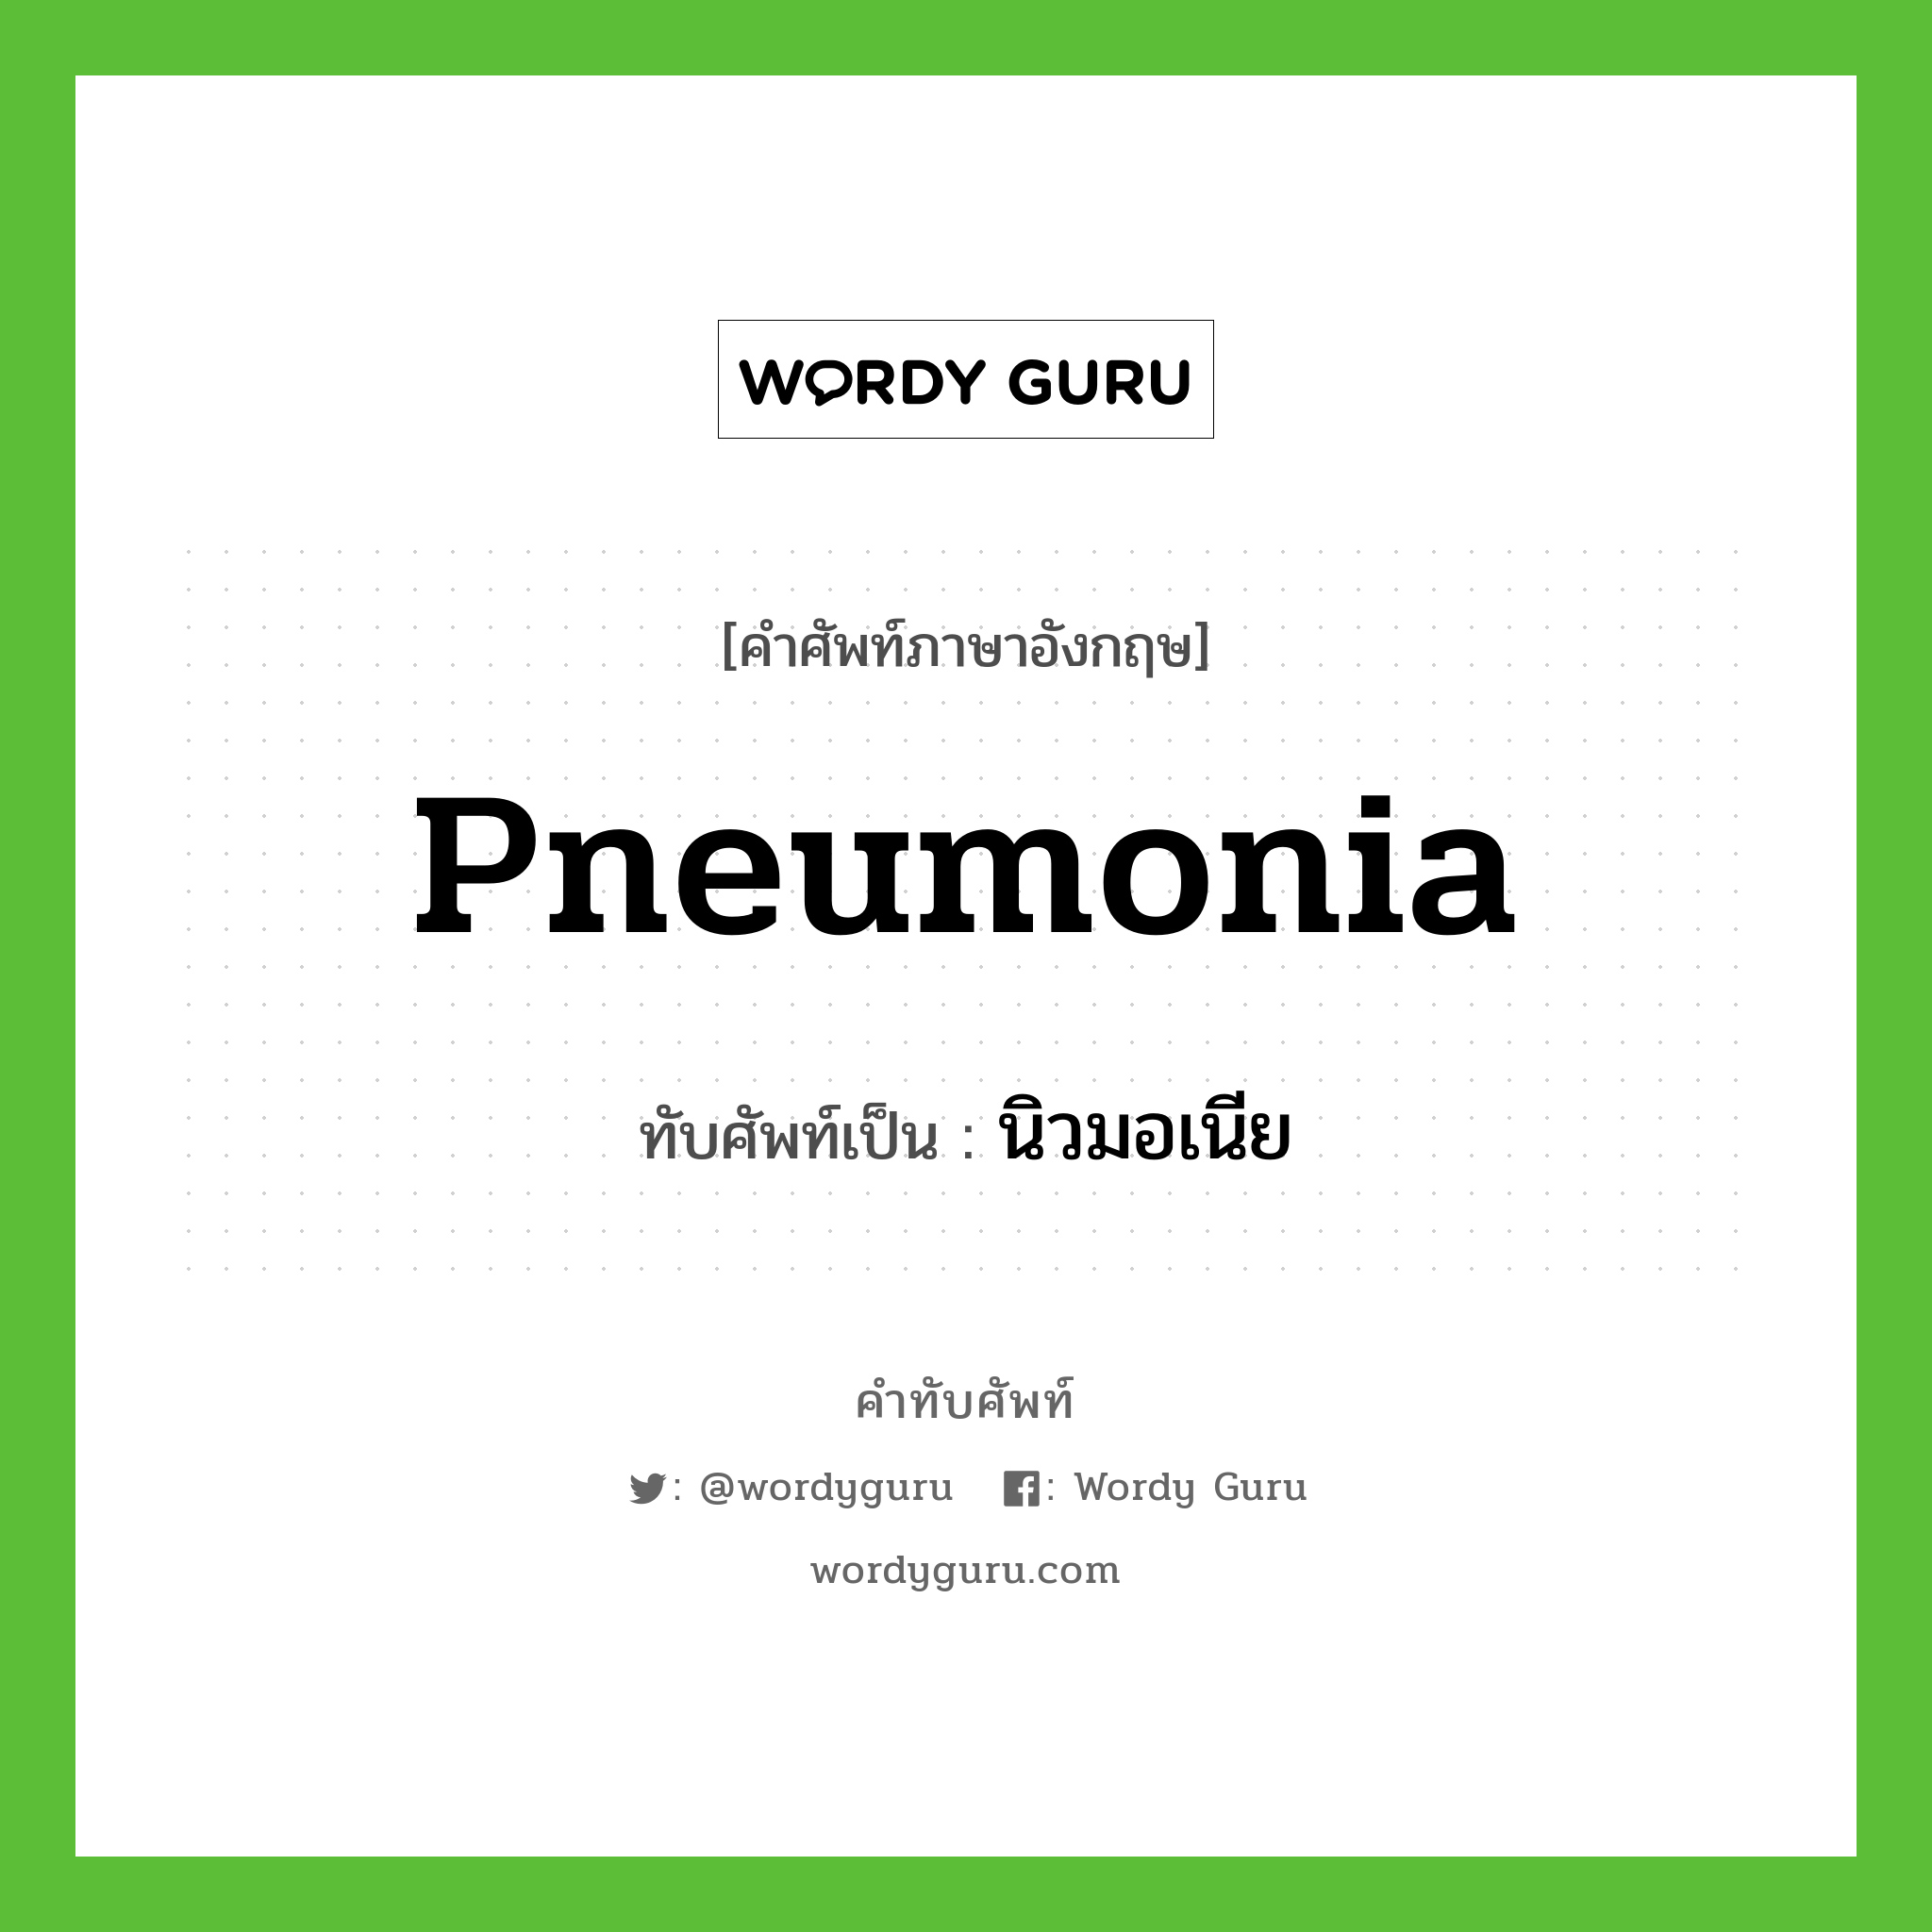 pneumonia เขียนเป็นคำไทยว่าอะไร?, คำศัพท์ภาษาอังกฤษ pneumonia ทับศัพท์เป็น นิวมอเนีย